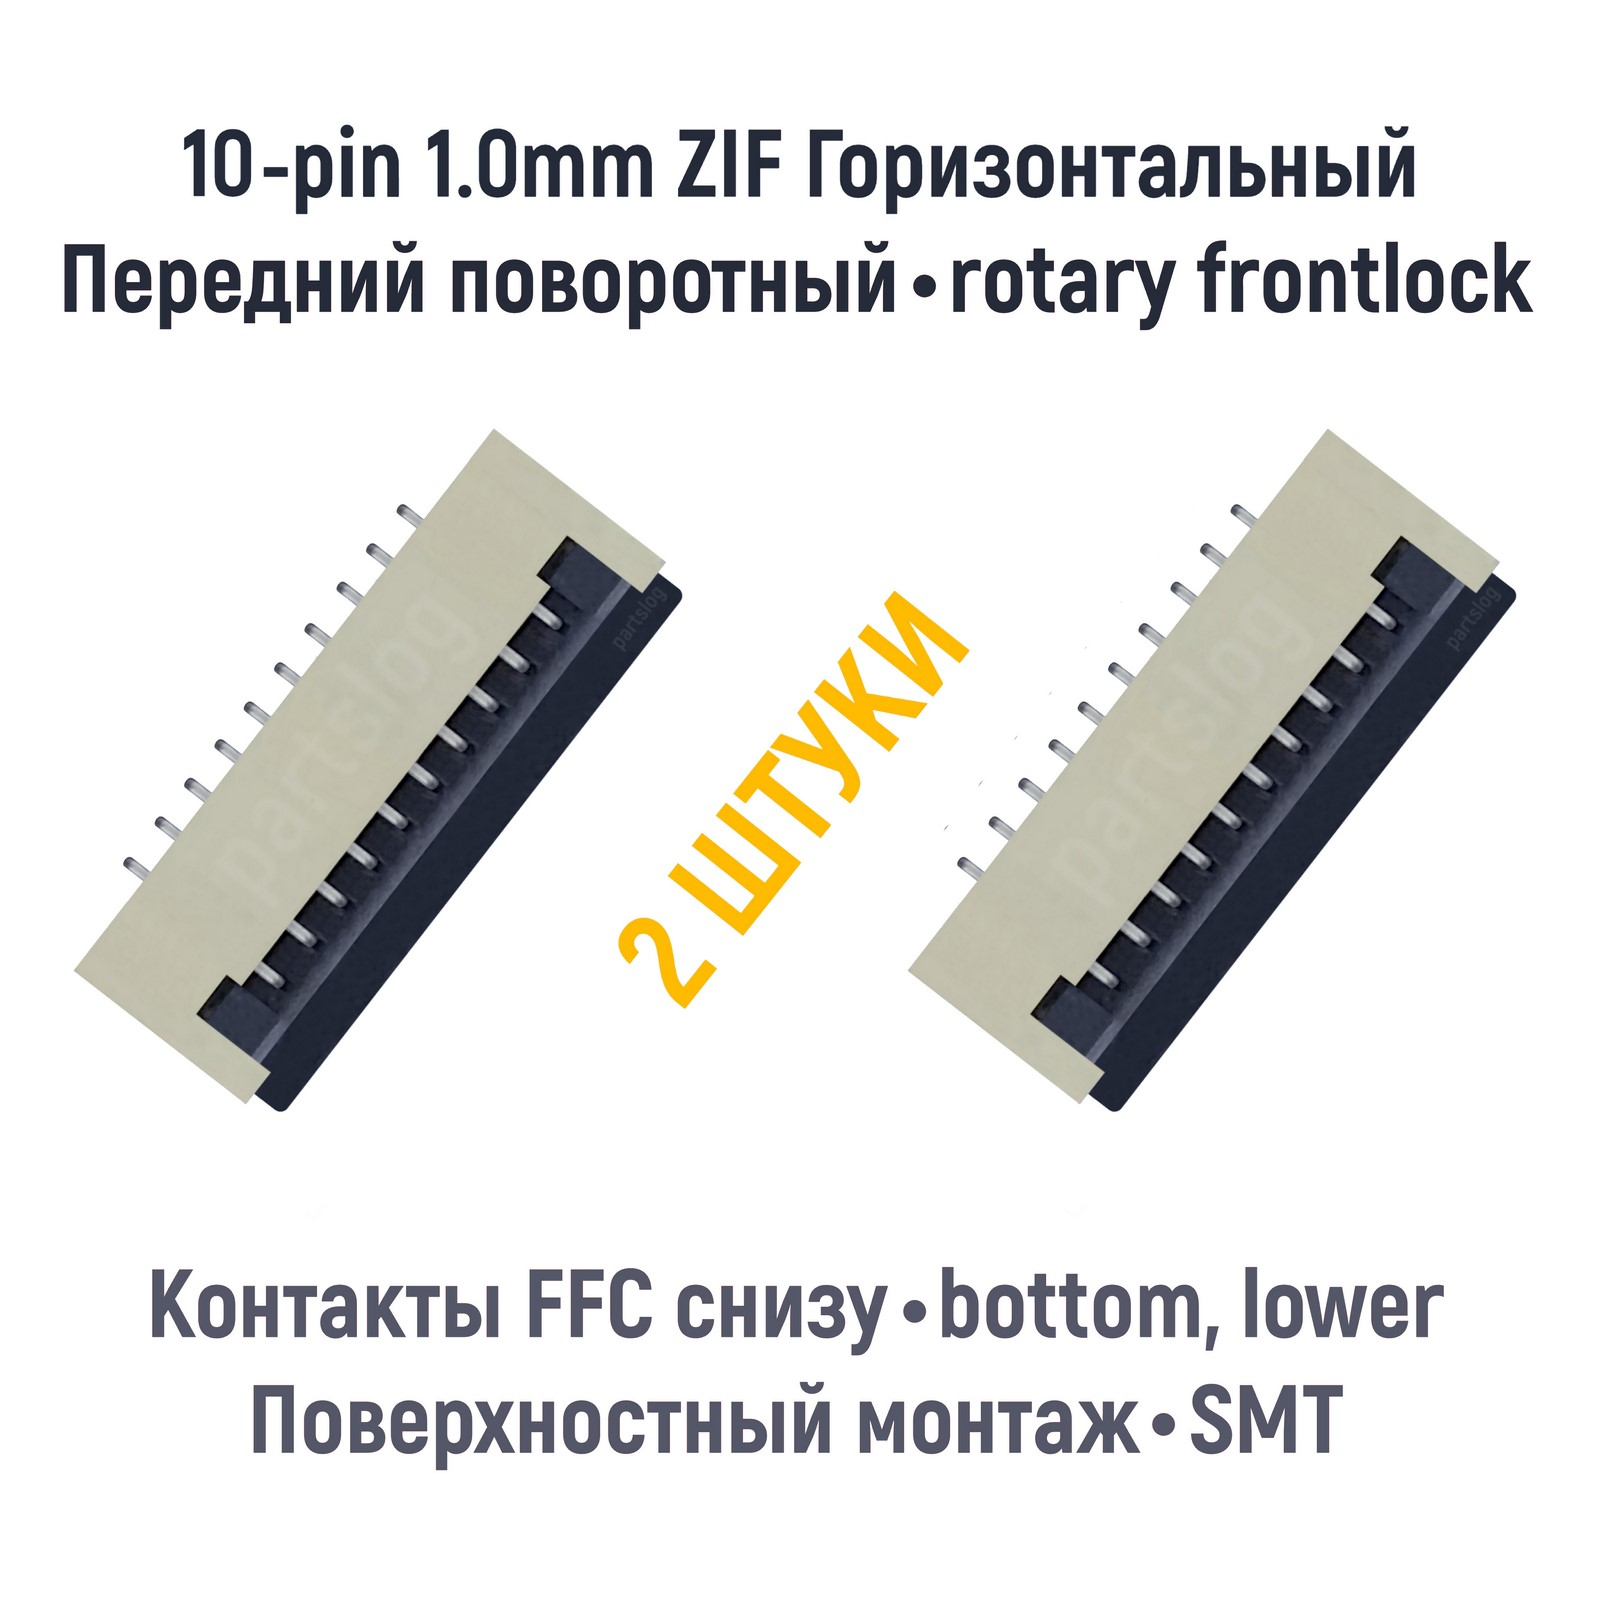 Коннектор OEM для FFC FPC 10-pin шаг 1.0mm ZIF